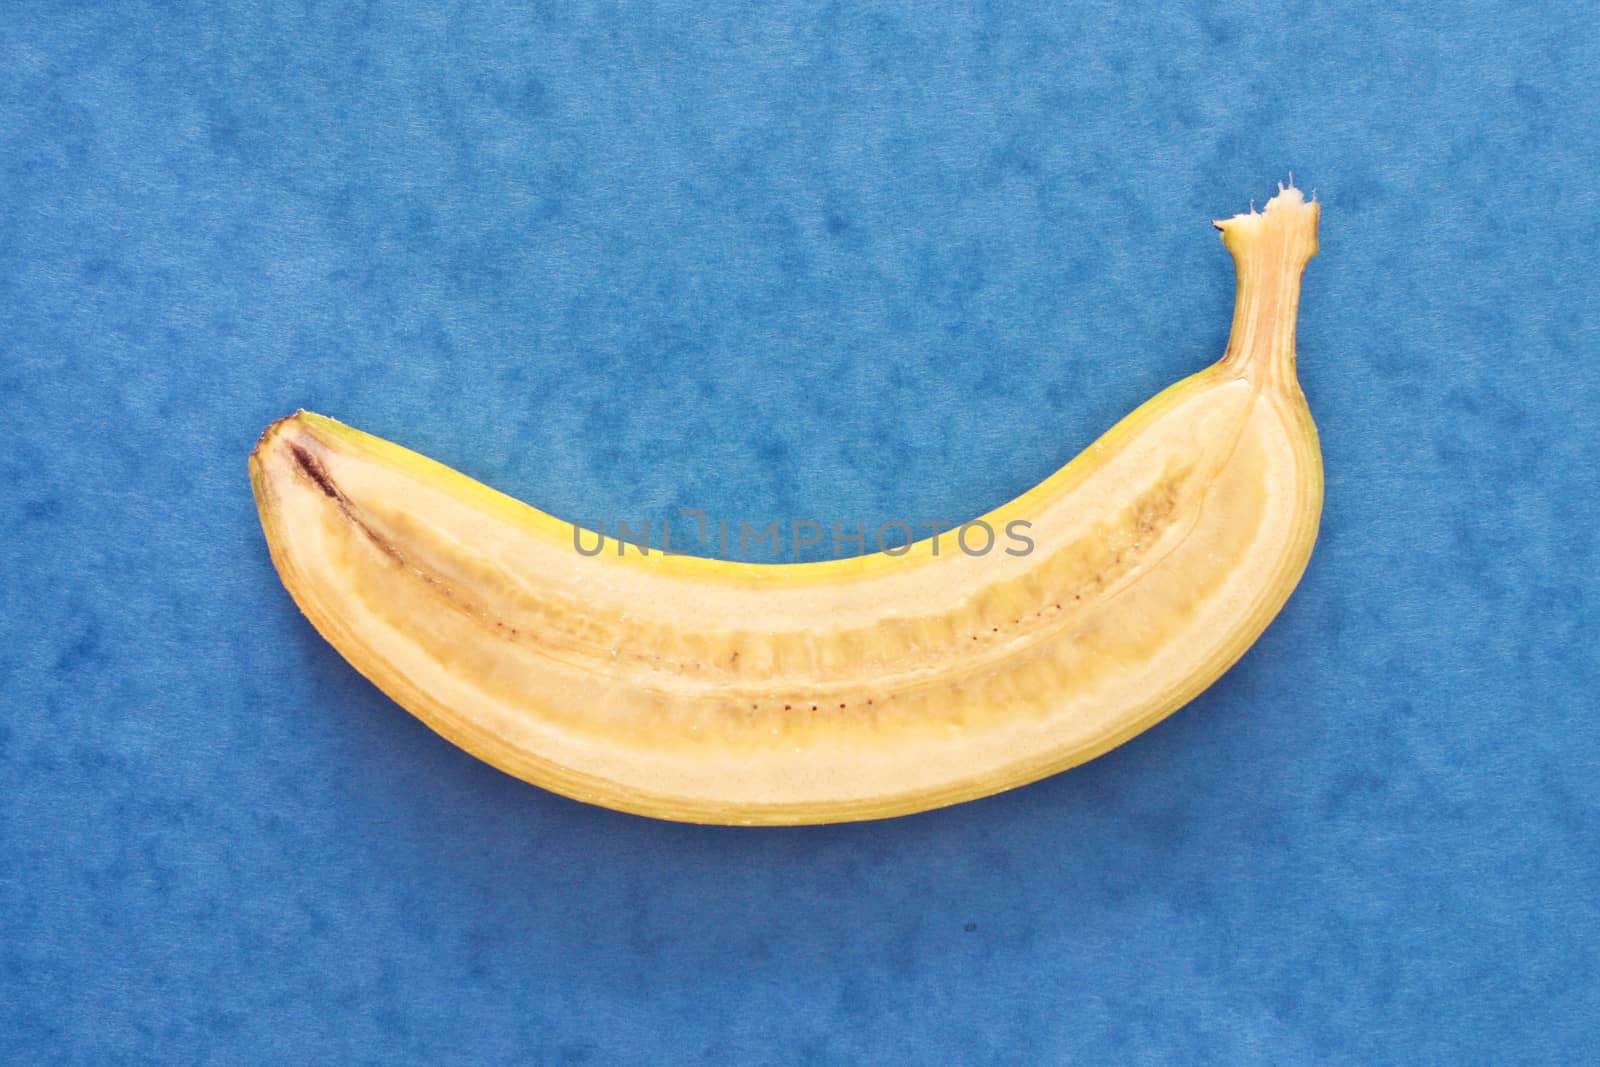 Banana by trgowanlock